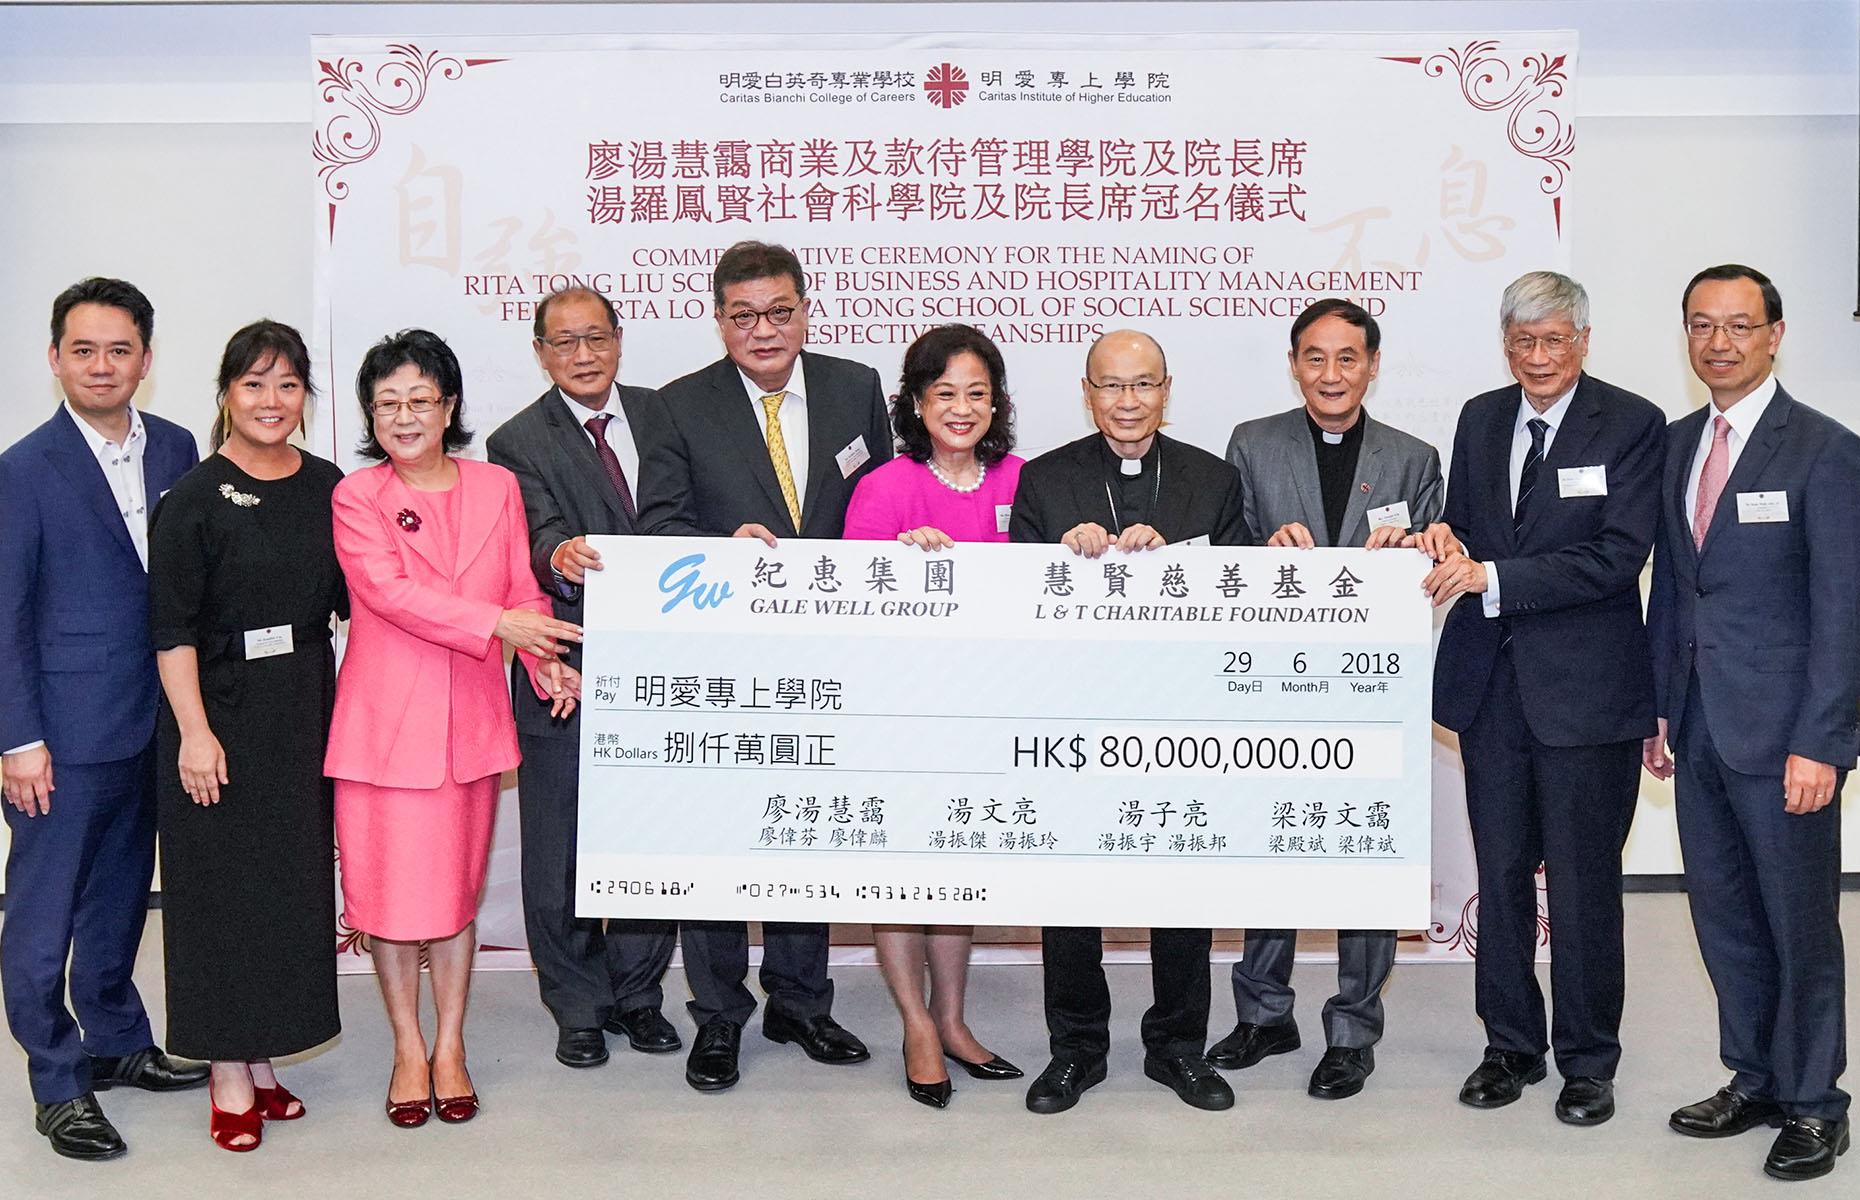 8th) Rita Tong Liu: $4 billion (£3.1bn)